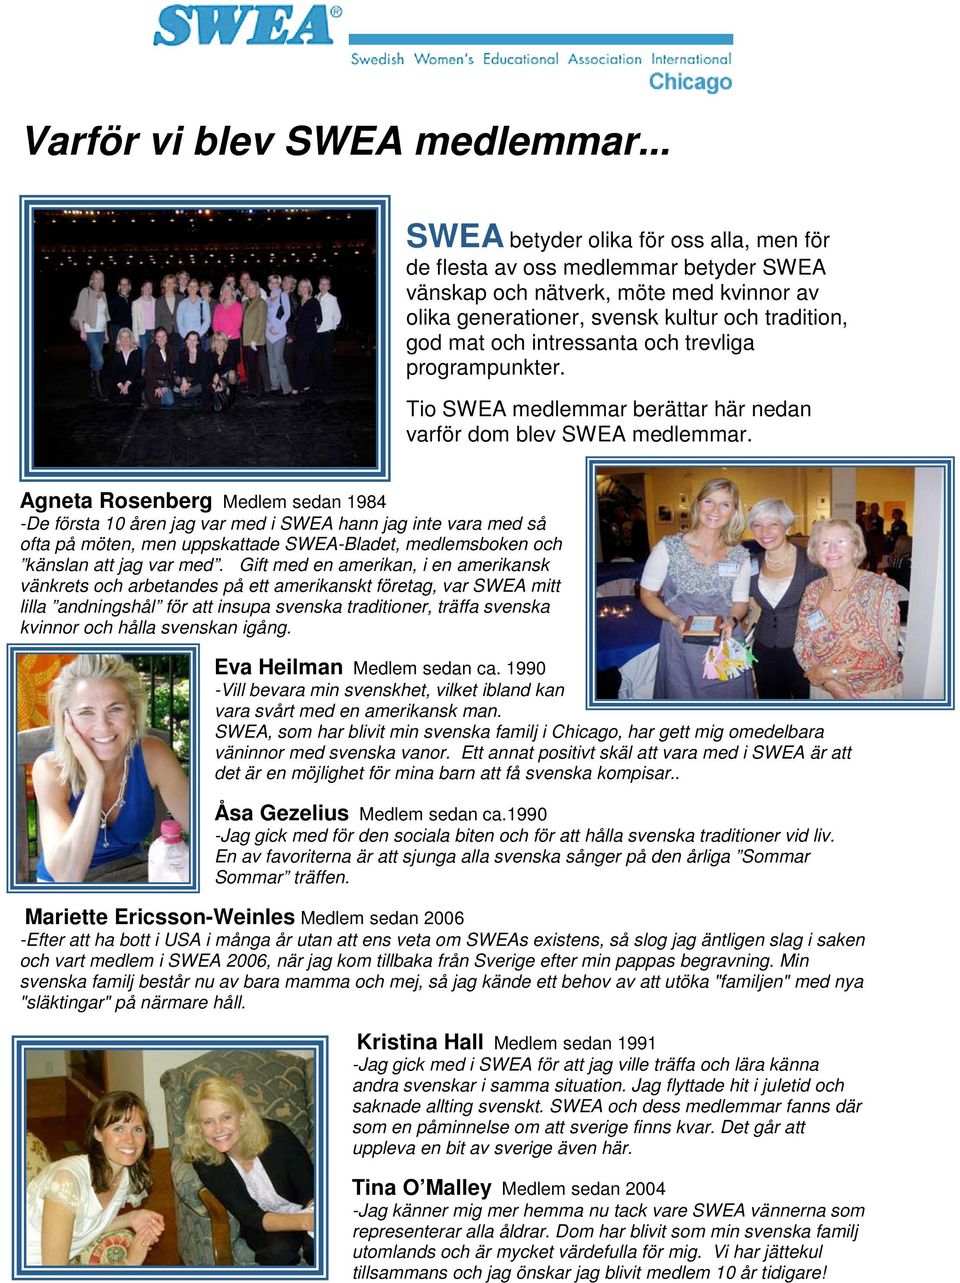 och trevliga programpunkter. Tio SWEA medlemmar berättar här nedan varför dom blev SWEA medlemmar.